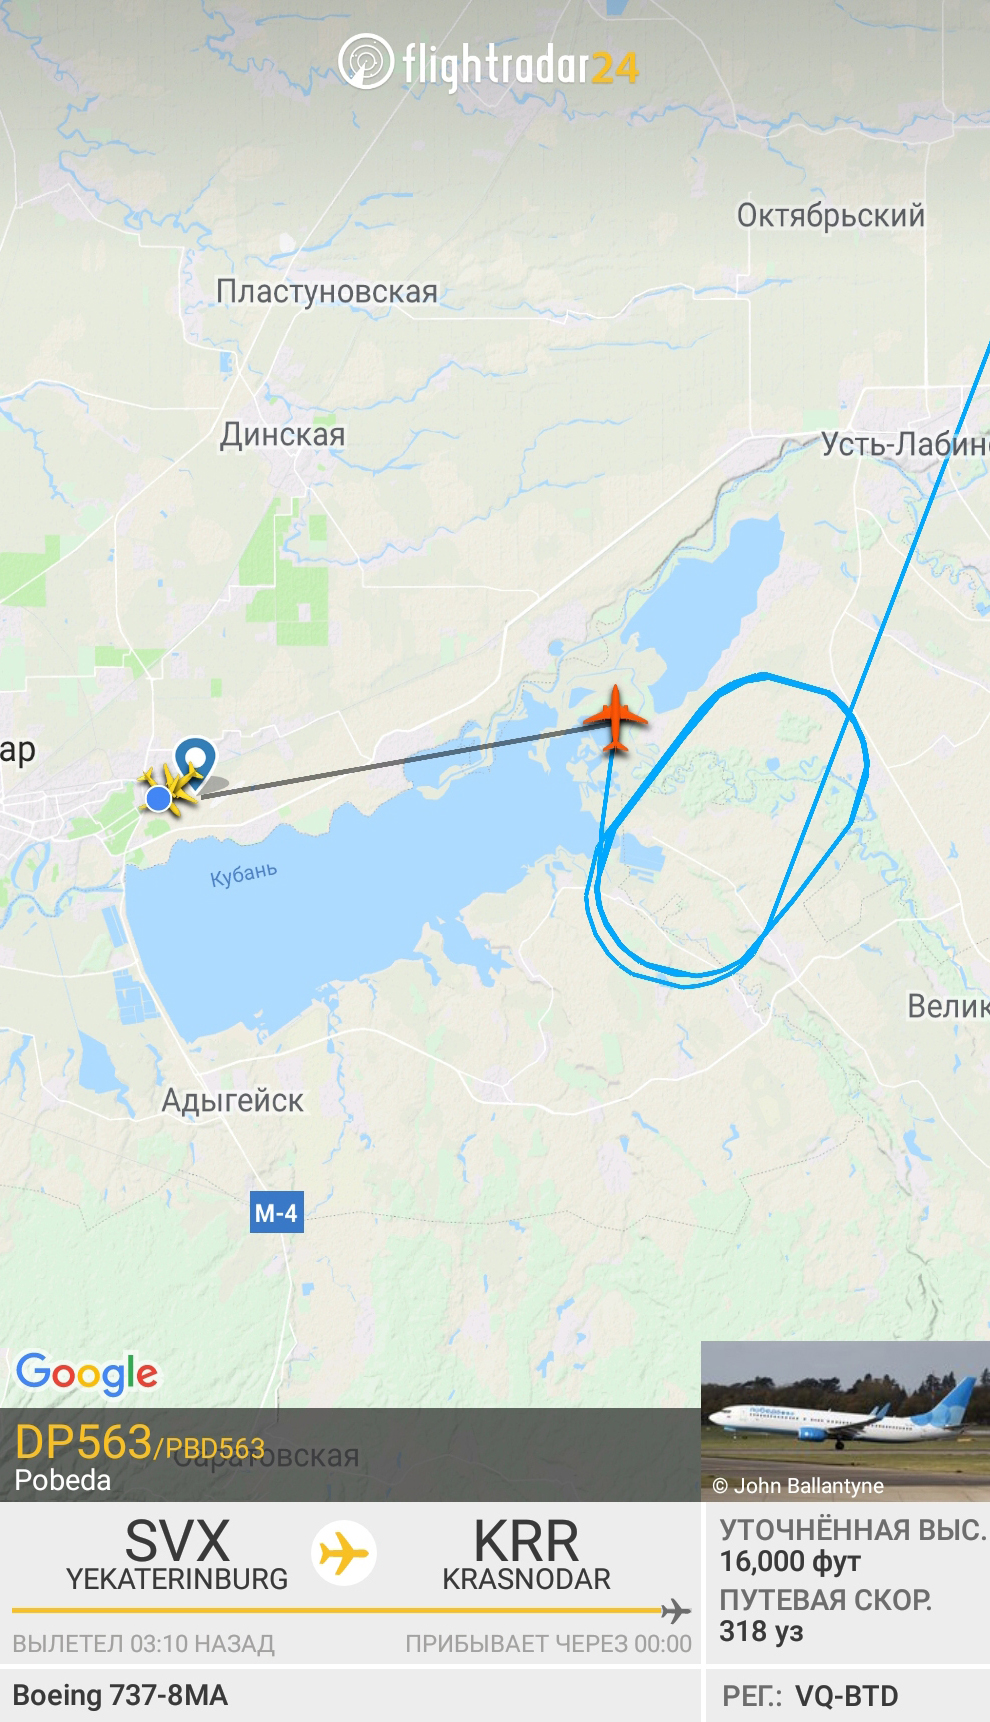 Скриншот приложения «Флайтрадар»: мой самолет кружит над Краснодаром